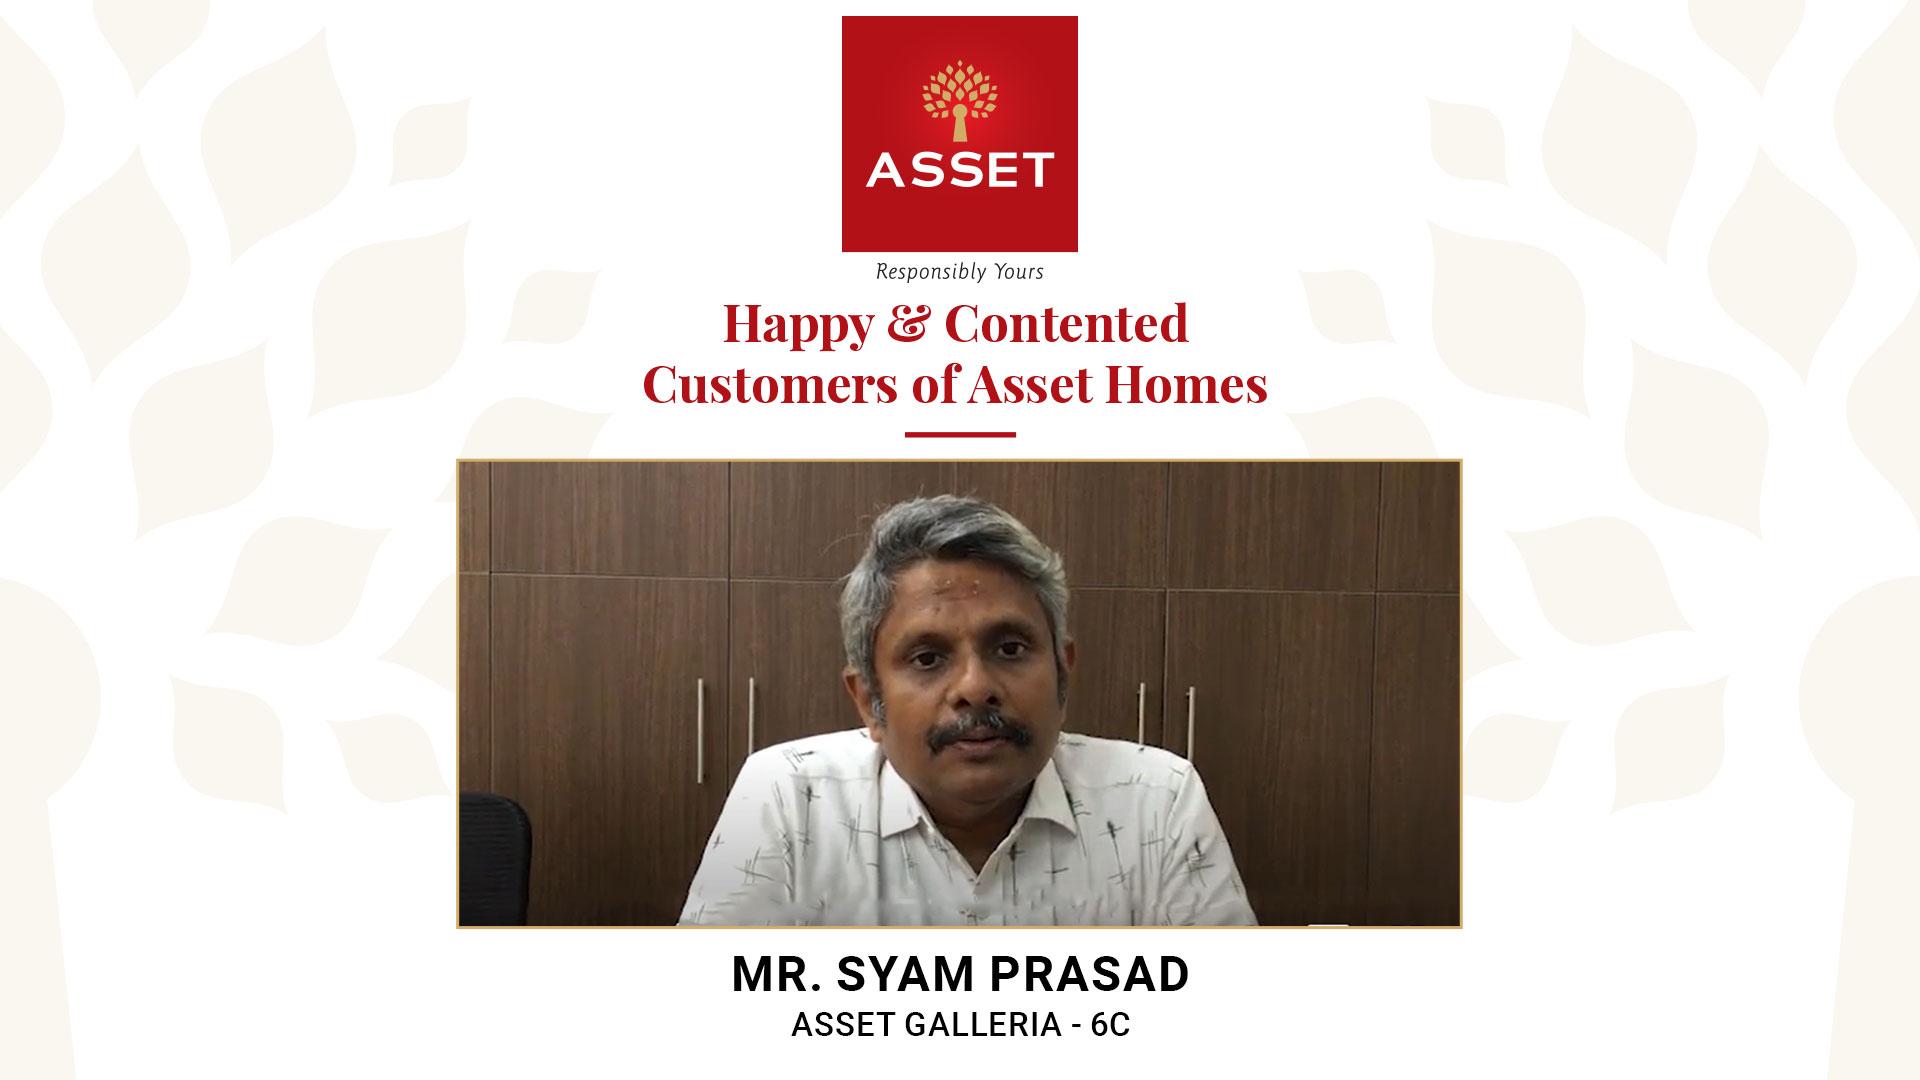 Mr. Syam Prasad, Asset Galleria 6C